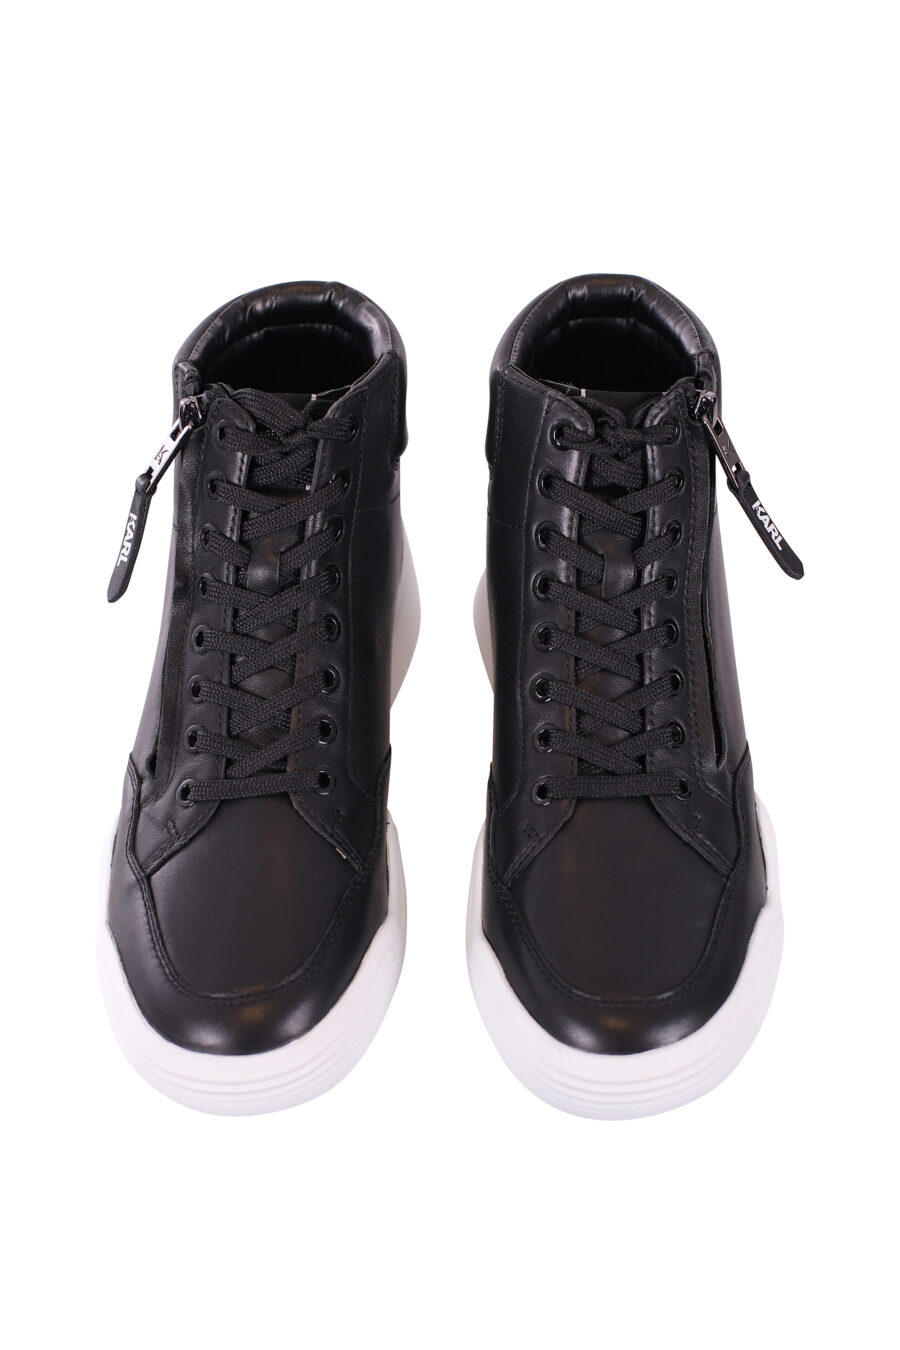 Zapatillas altas negras con suela blanca y cordones - IMG 5683